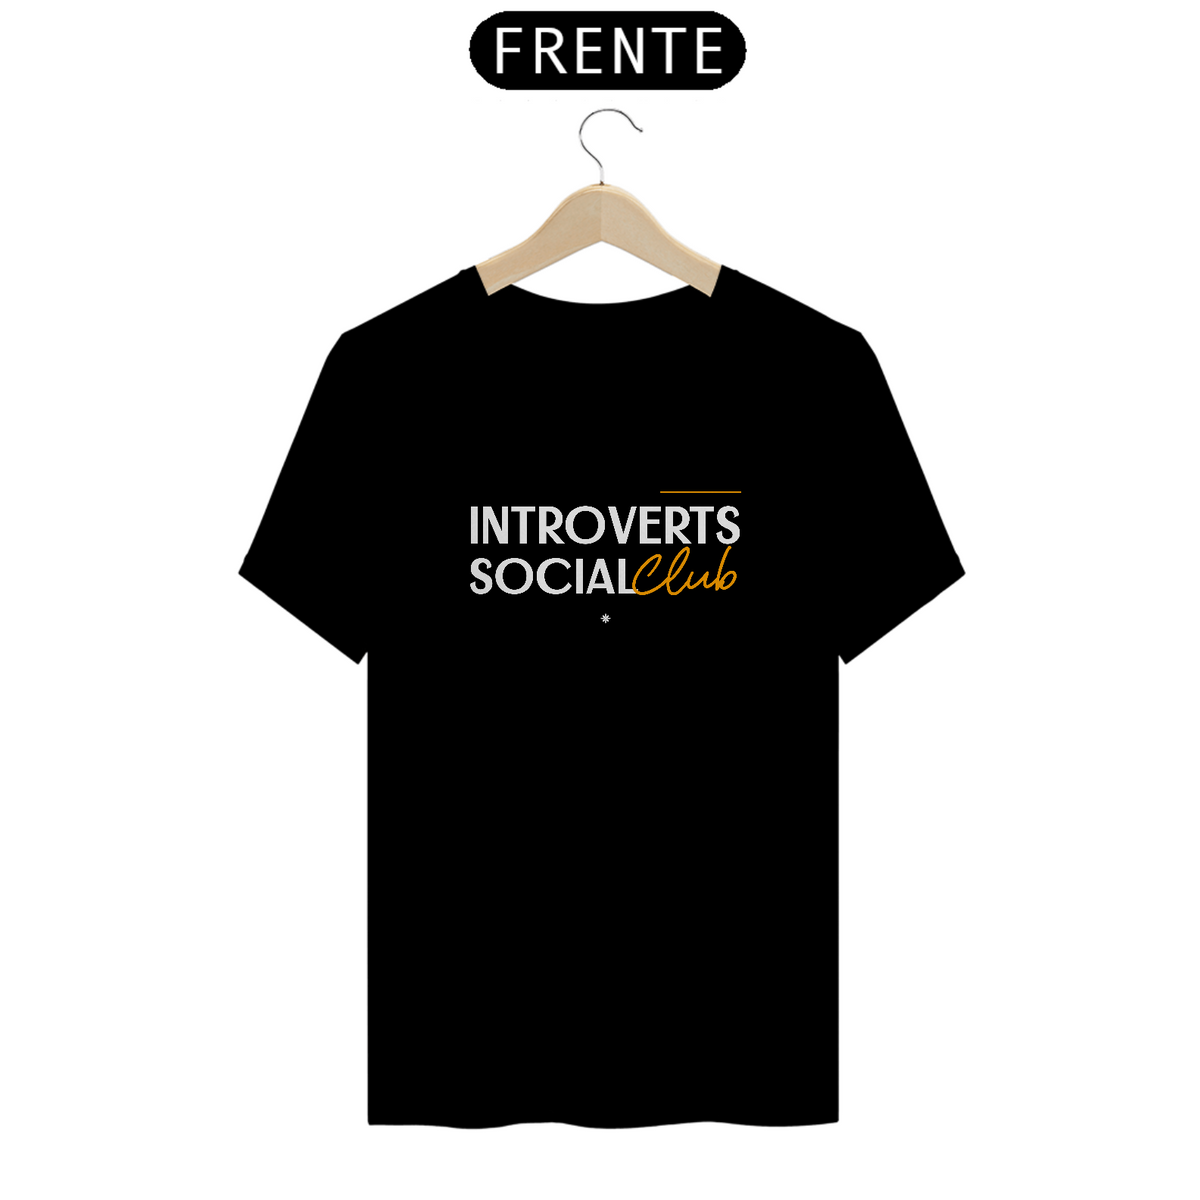 Nome do produto: Introverts Social Club